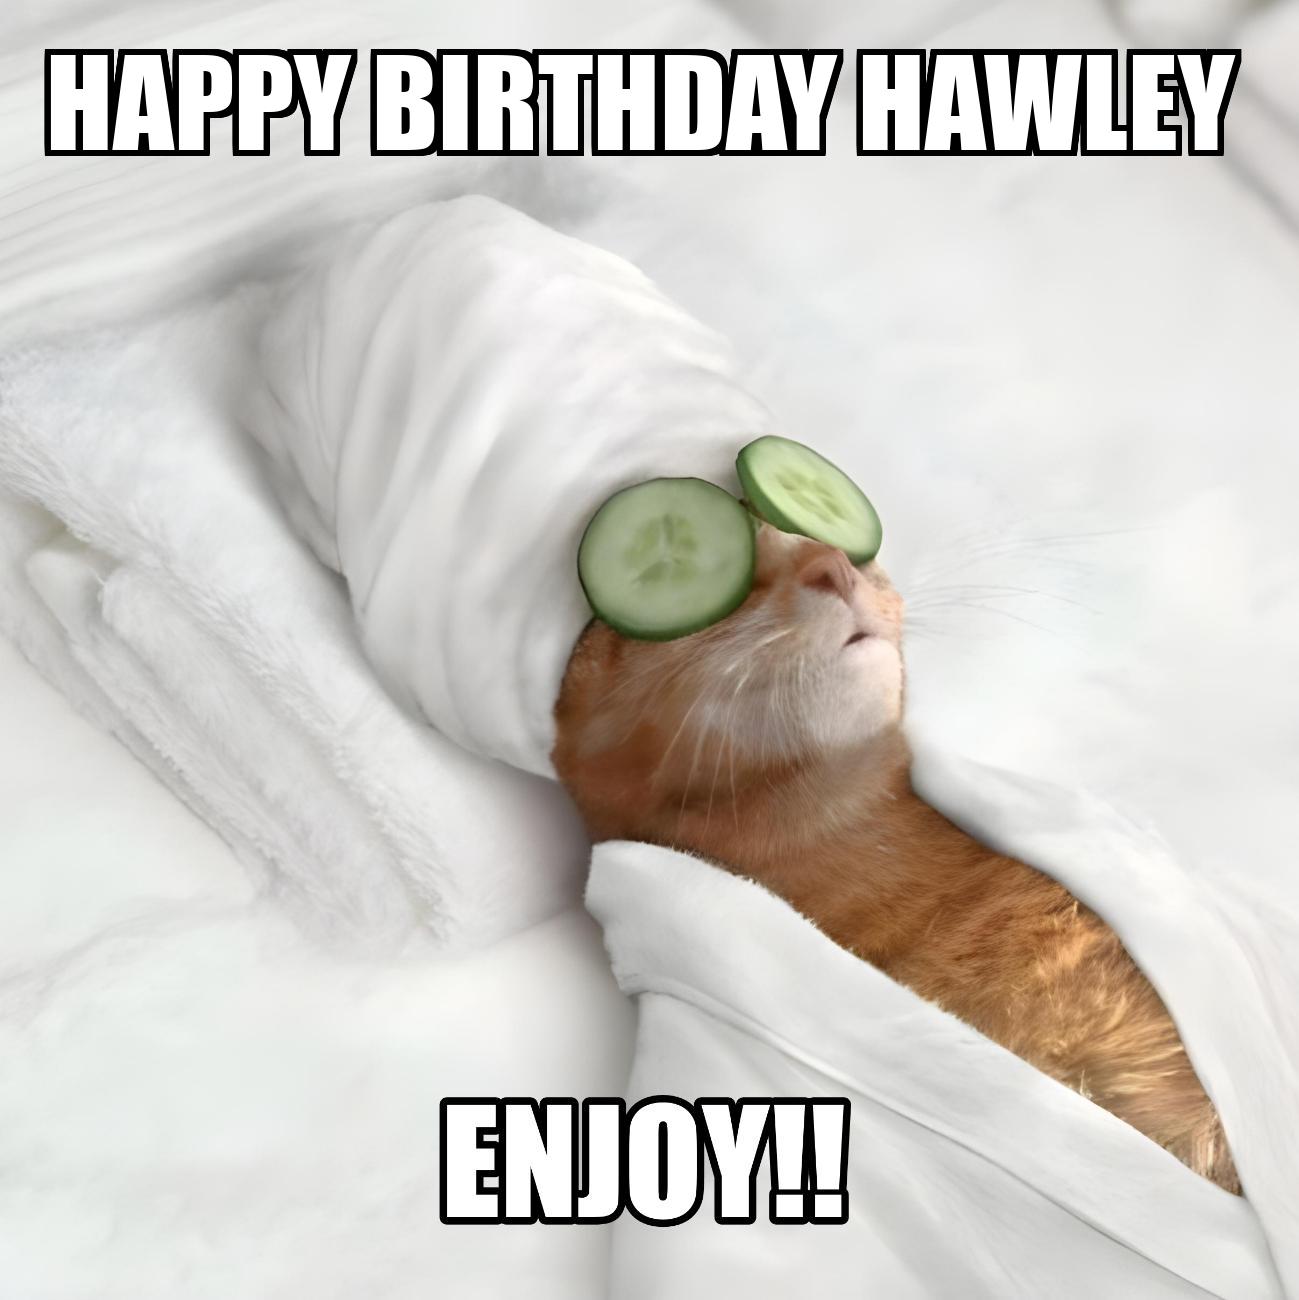 Happy Birthday Hawley Enjoy Cat Meme